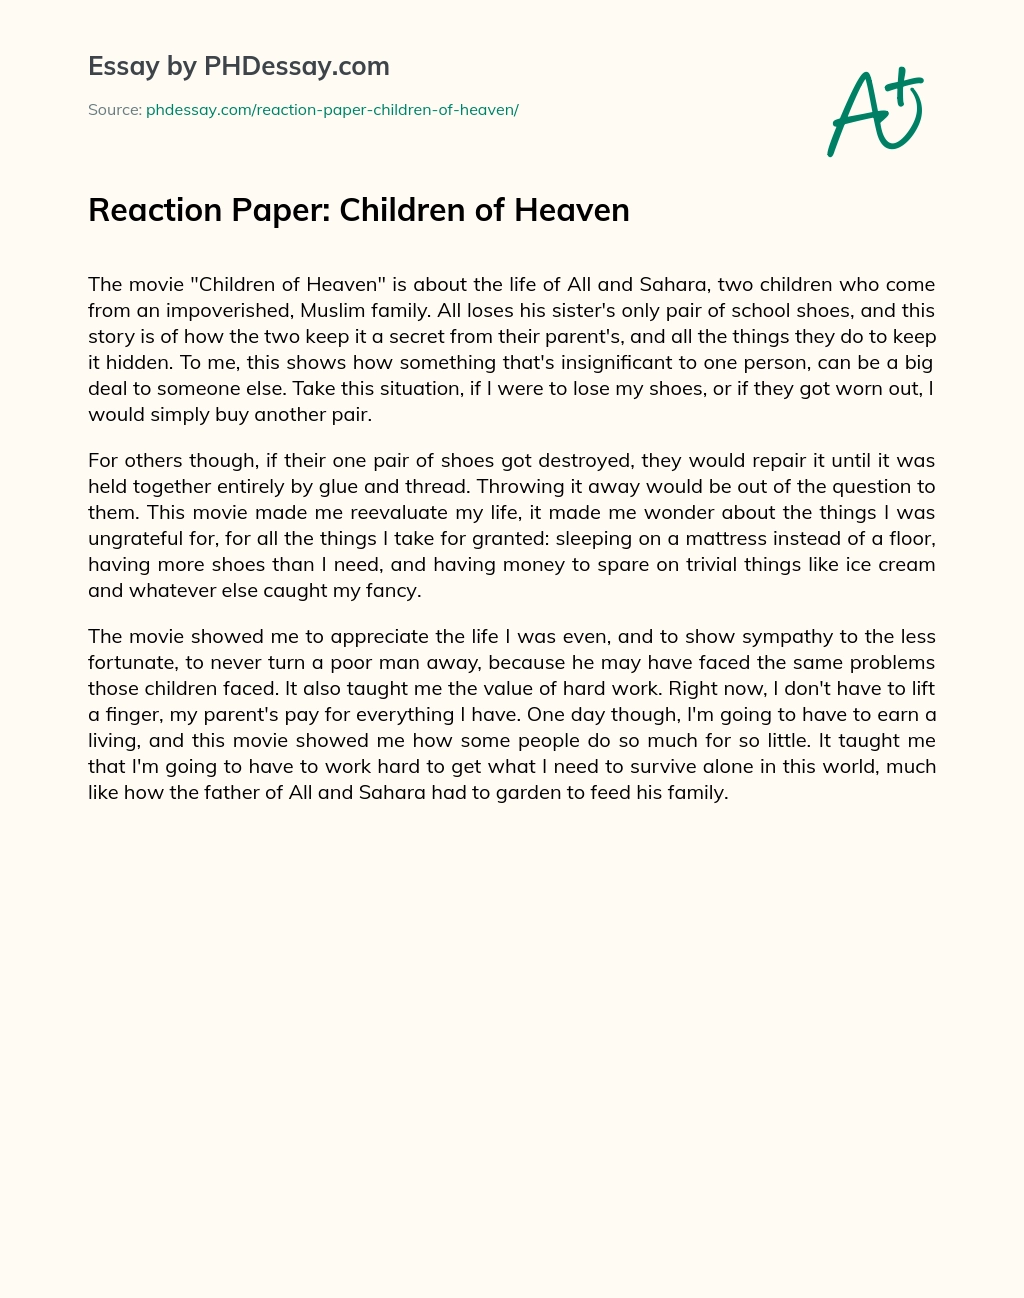 Reaction Paper: Children of Heaven essay